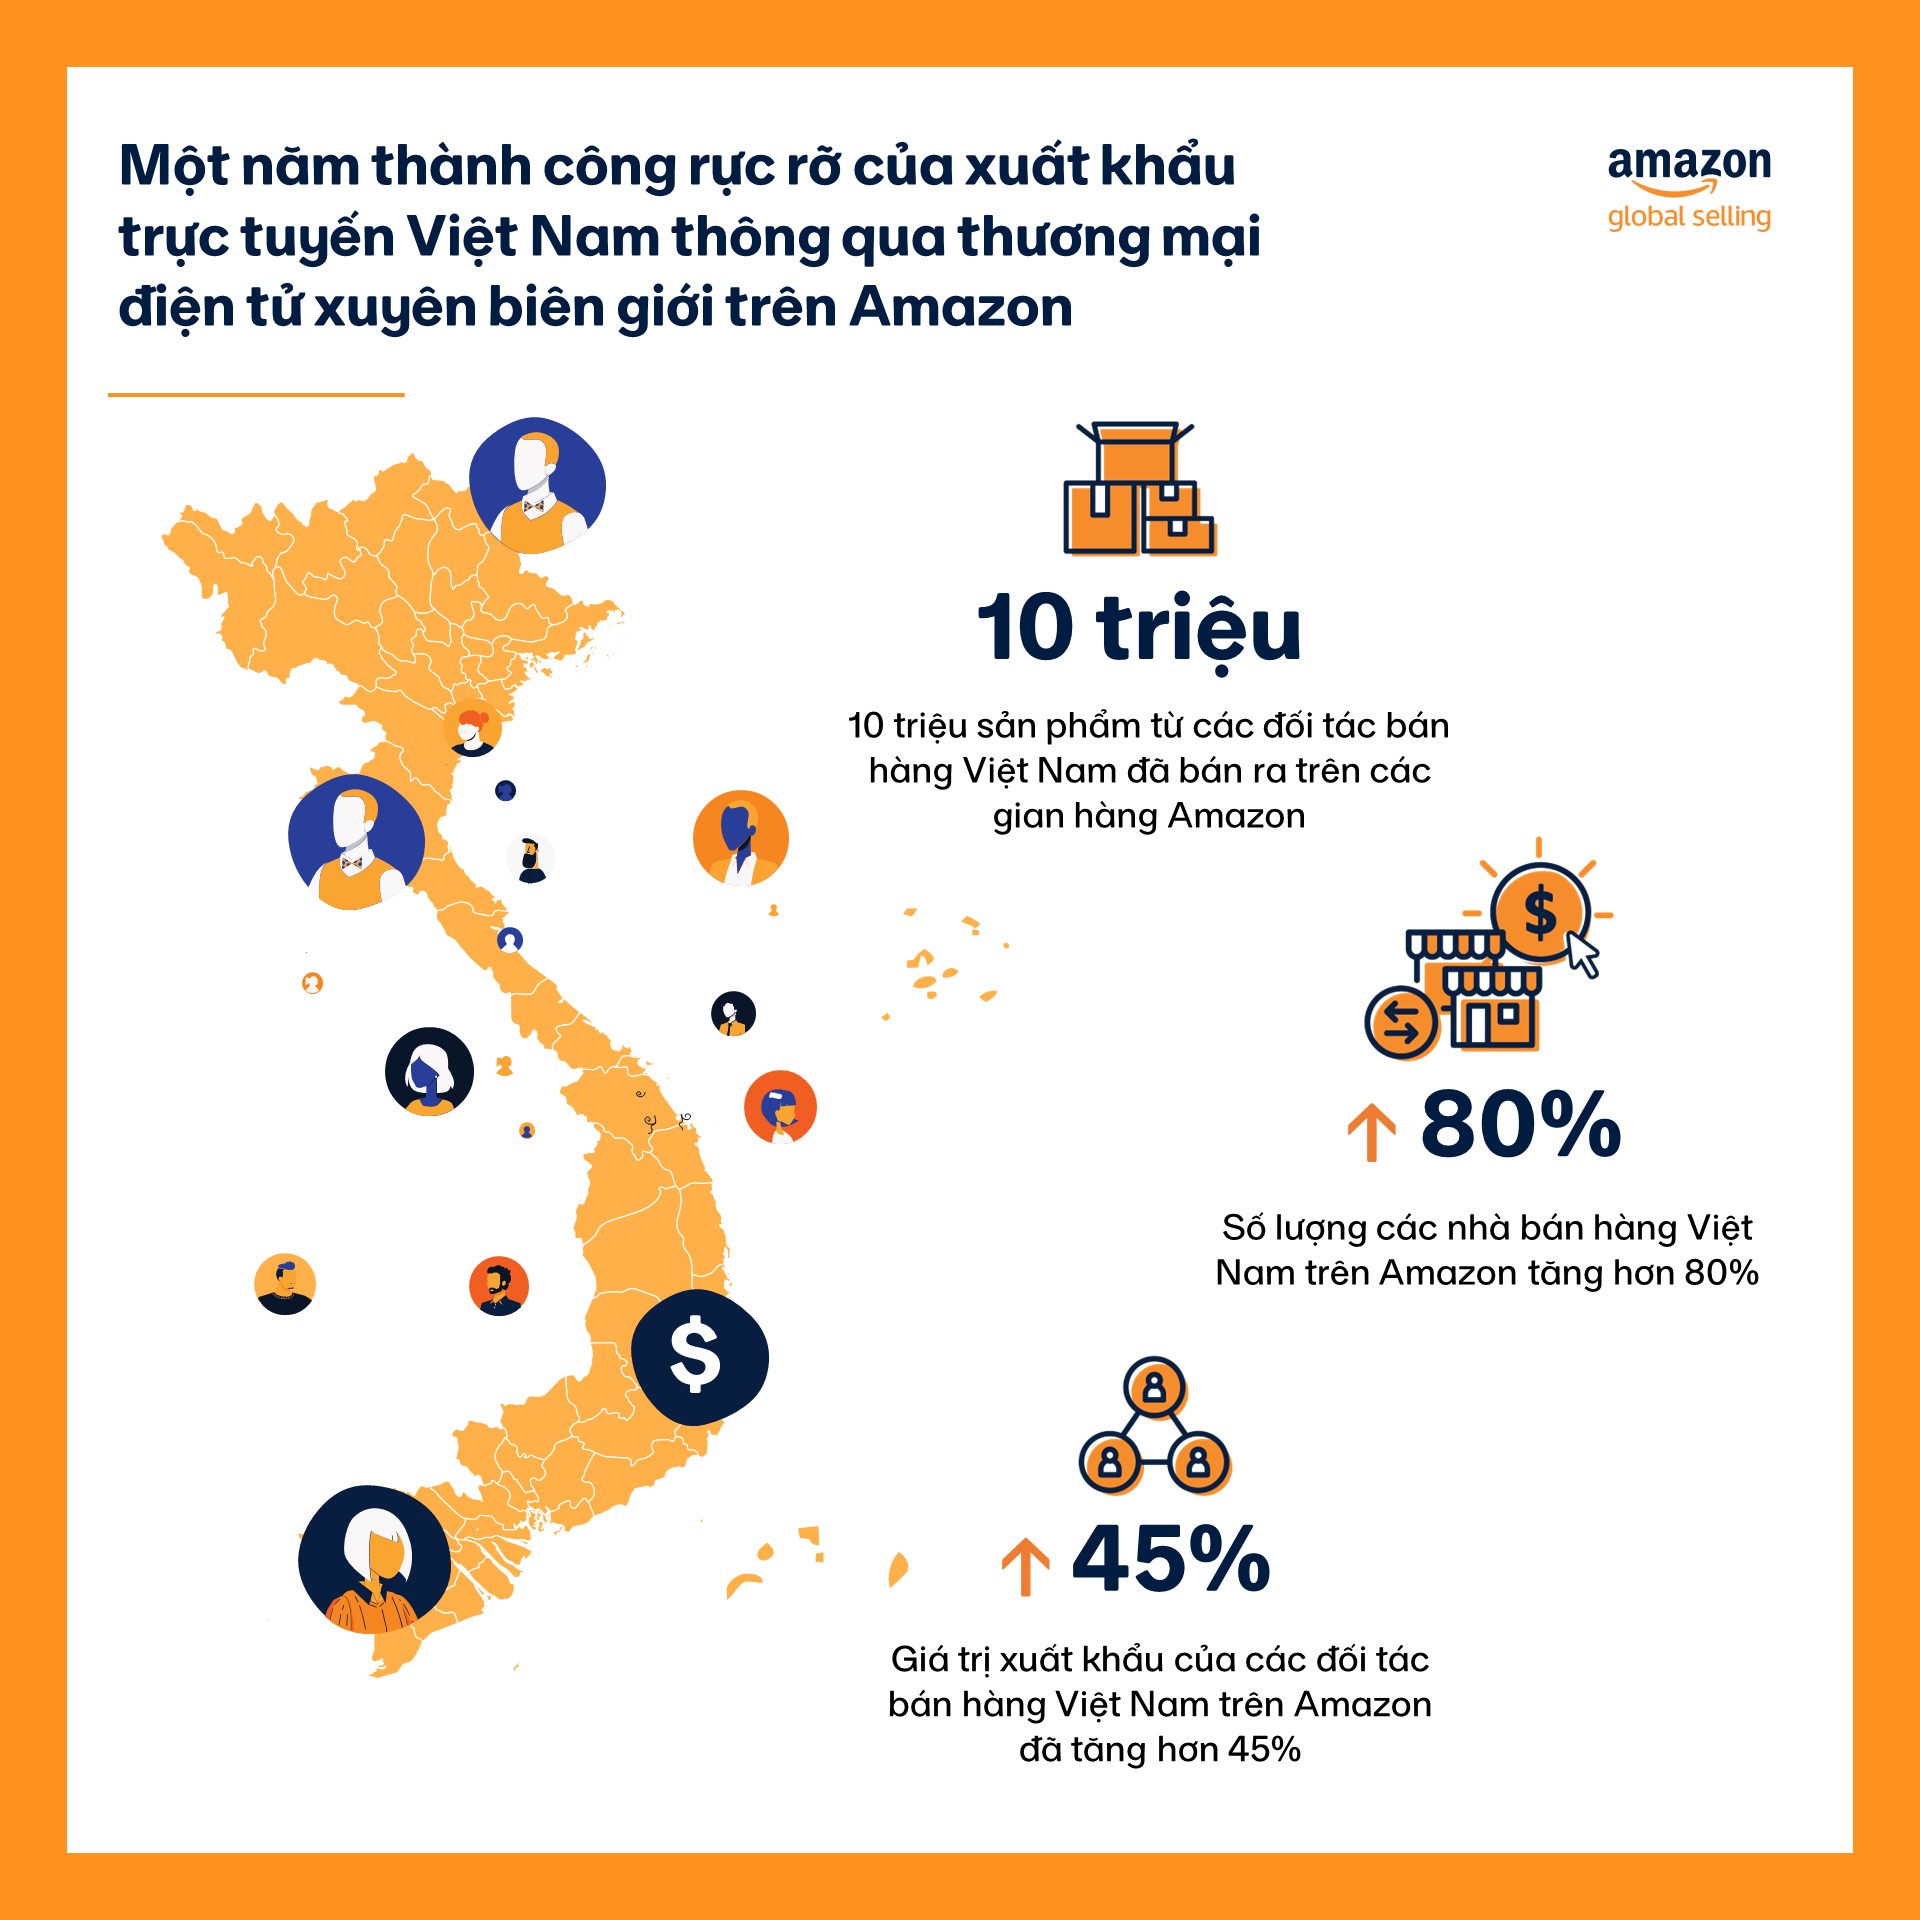 Sự khác biệt đáng chú ý nhất giữa 2 mô hình kinh doanh của Amazon và Alibaba